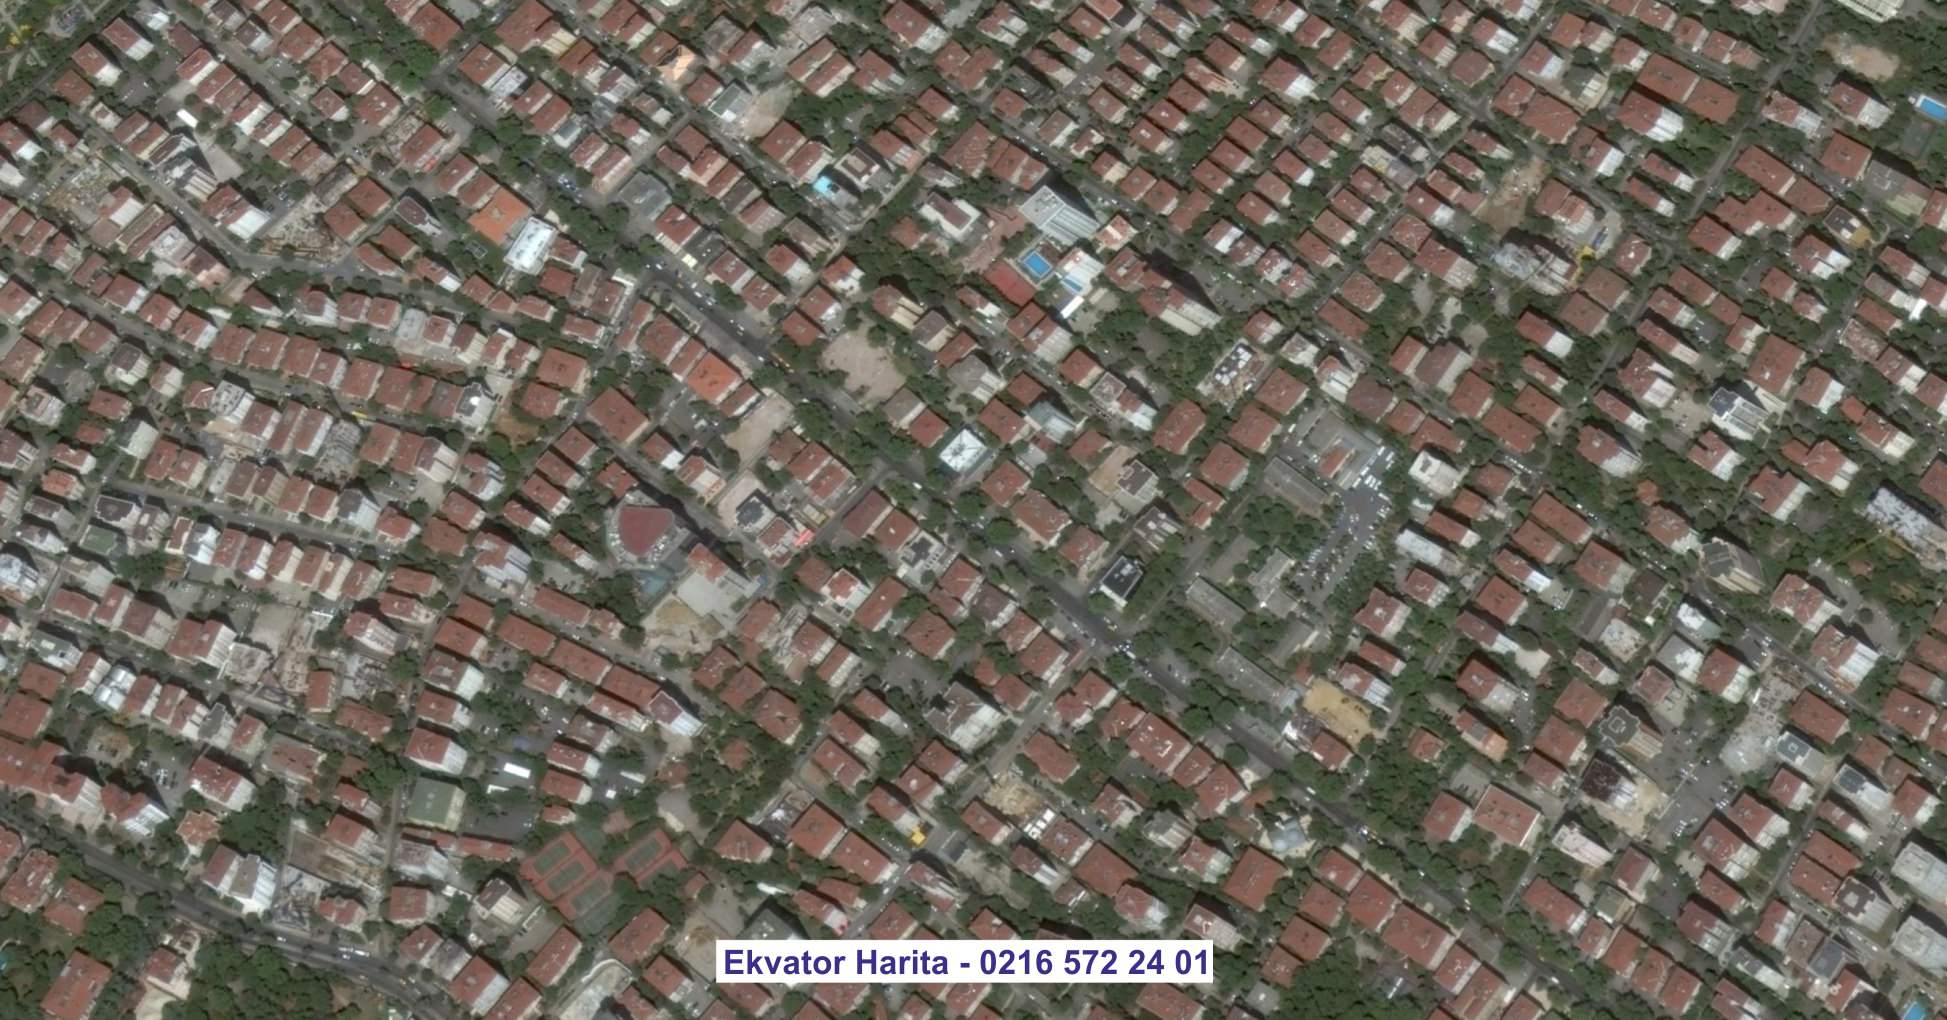 Çiğli Uydu Görüntüsü Örnek Fotoğrafı